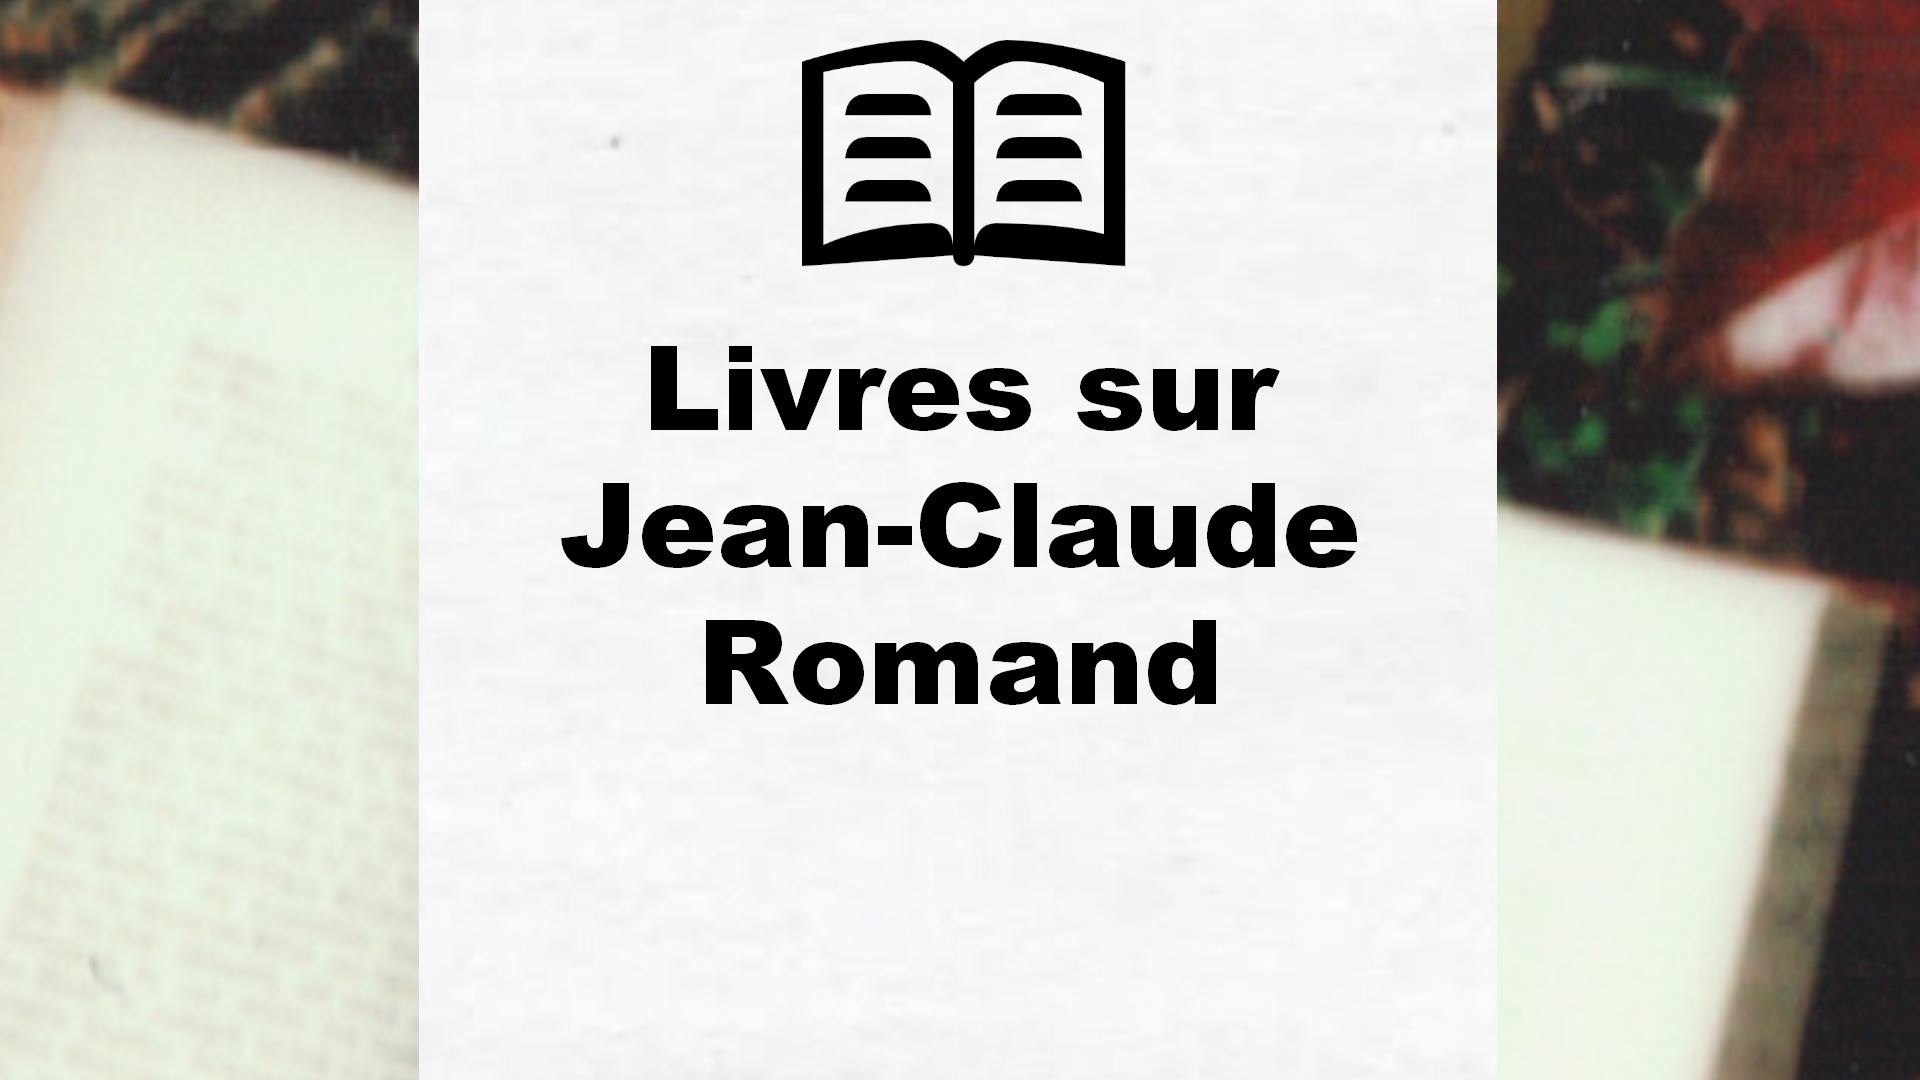 Livres sur Jean-Claude Romand